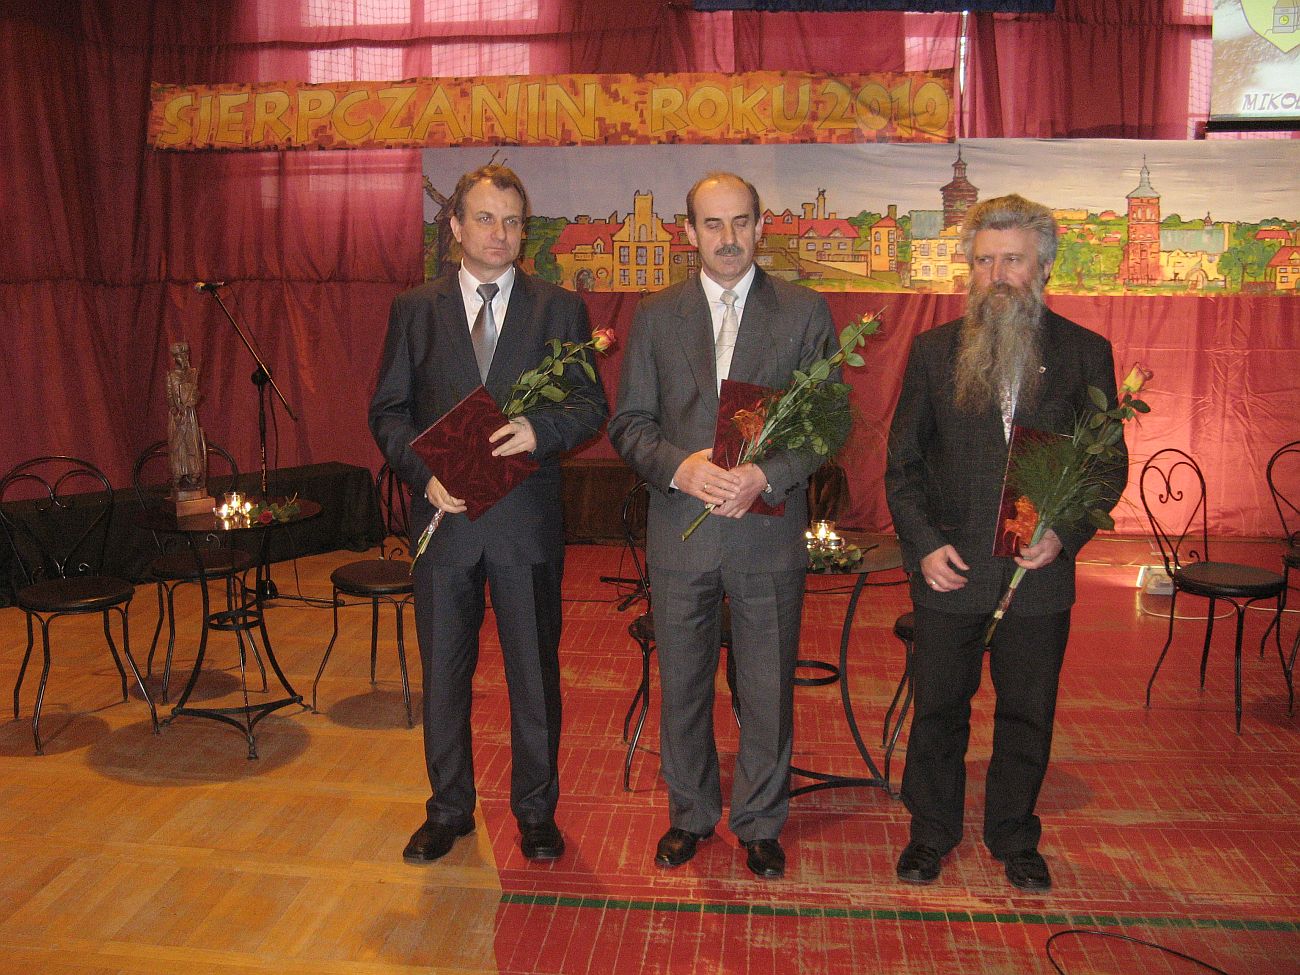 Ju trjka nominowanych na scenie: od prawej Pawe B. Gsiorowski, Micha Gowacki i Jzef Urbaski.